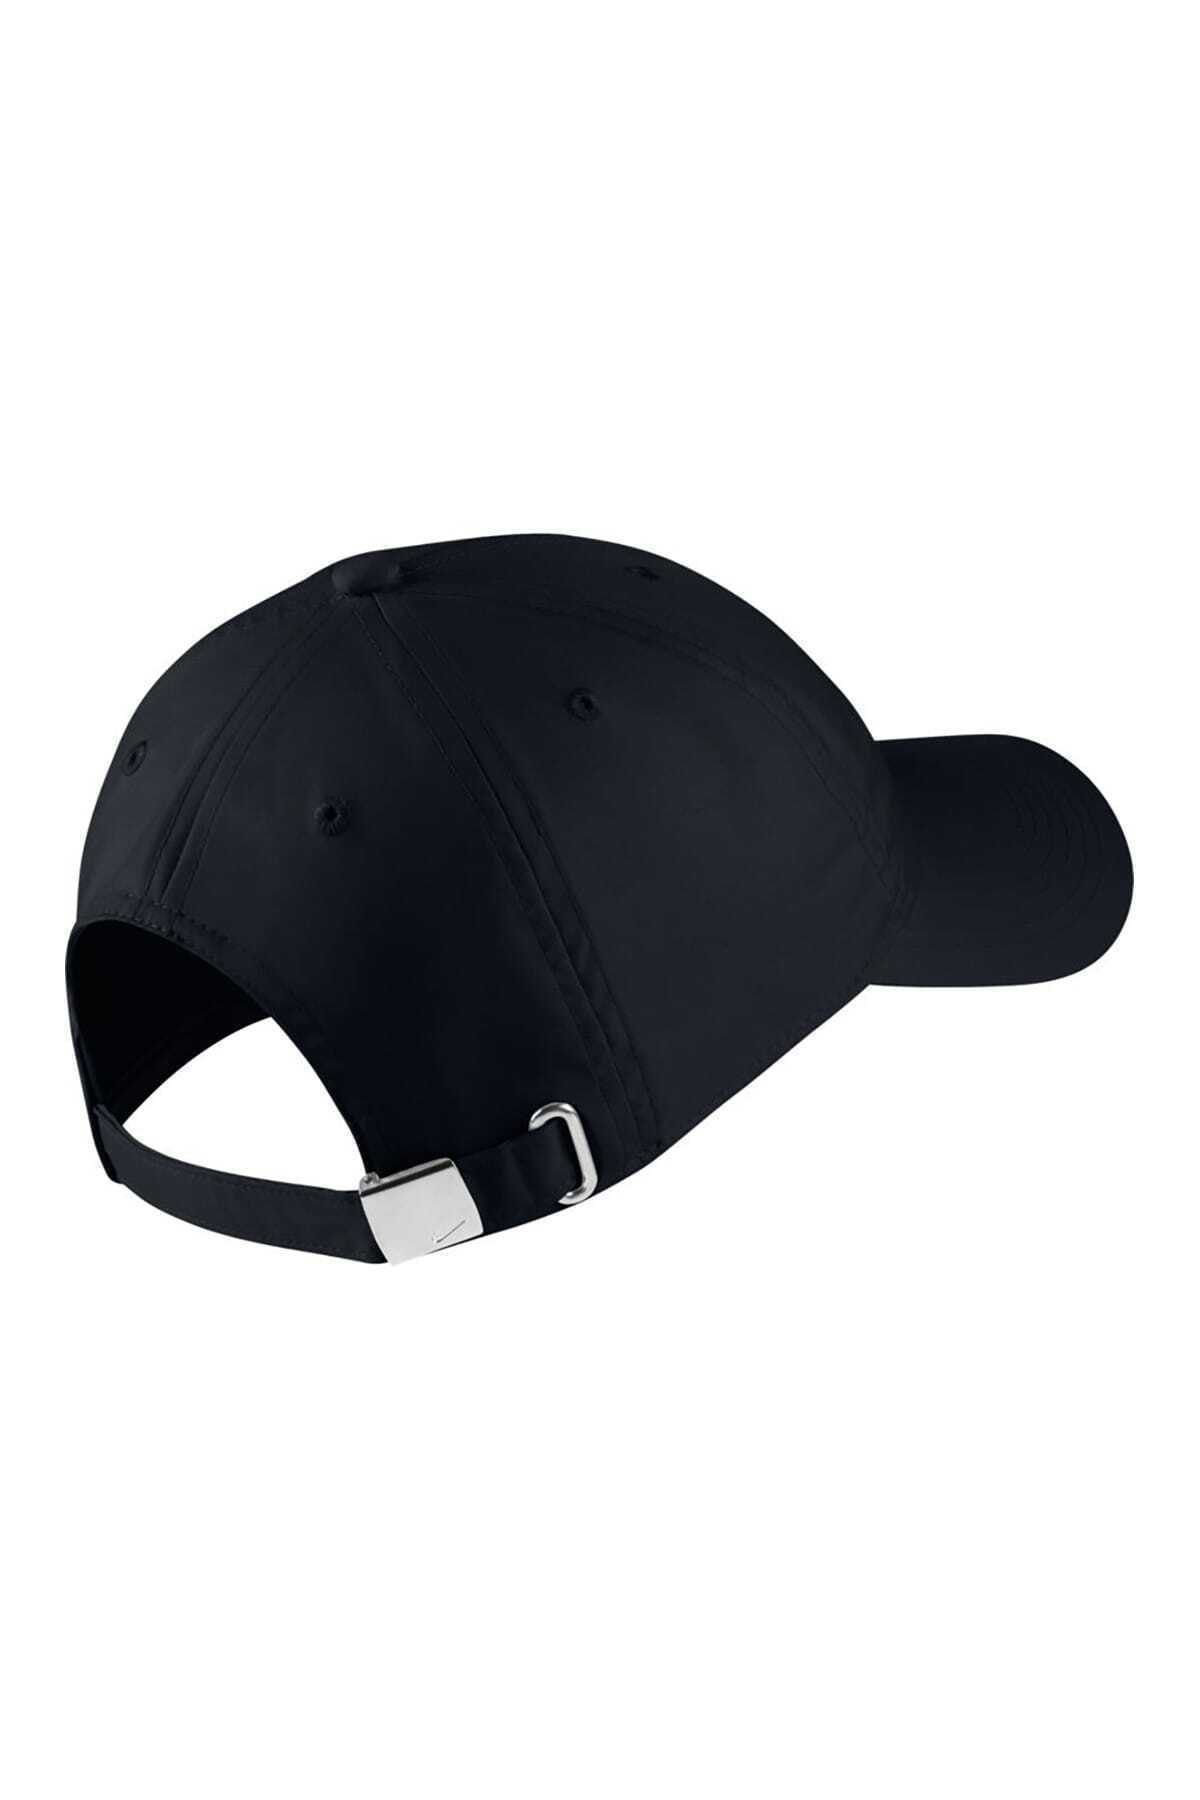 کلاه کپ ورزشی زنانه مشکی مدل 86 - AV8055-010 برند Nike 